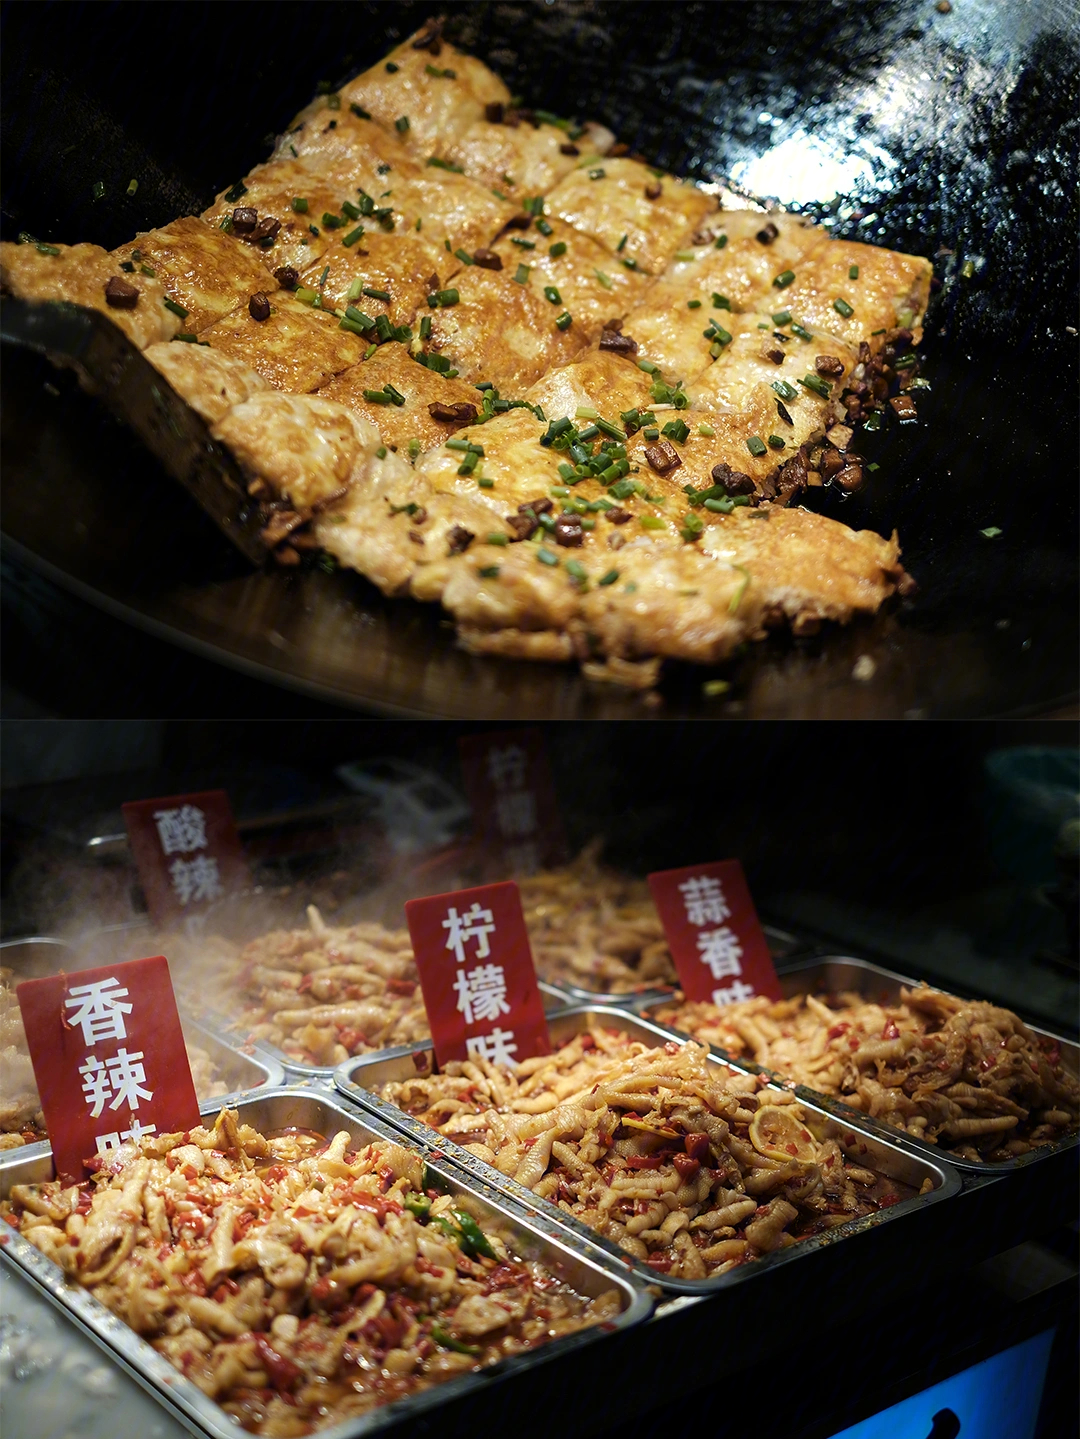 深圳东门老街美食攻略图片